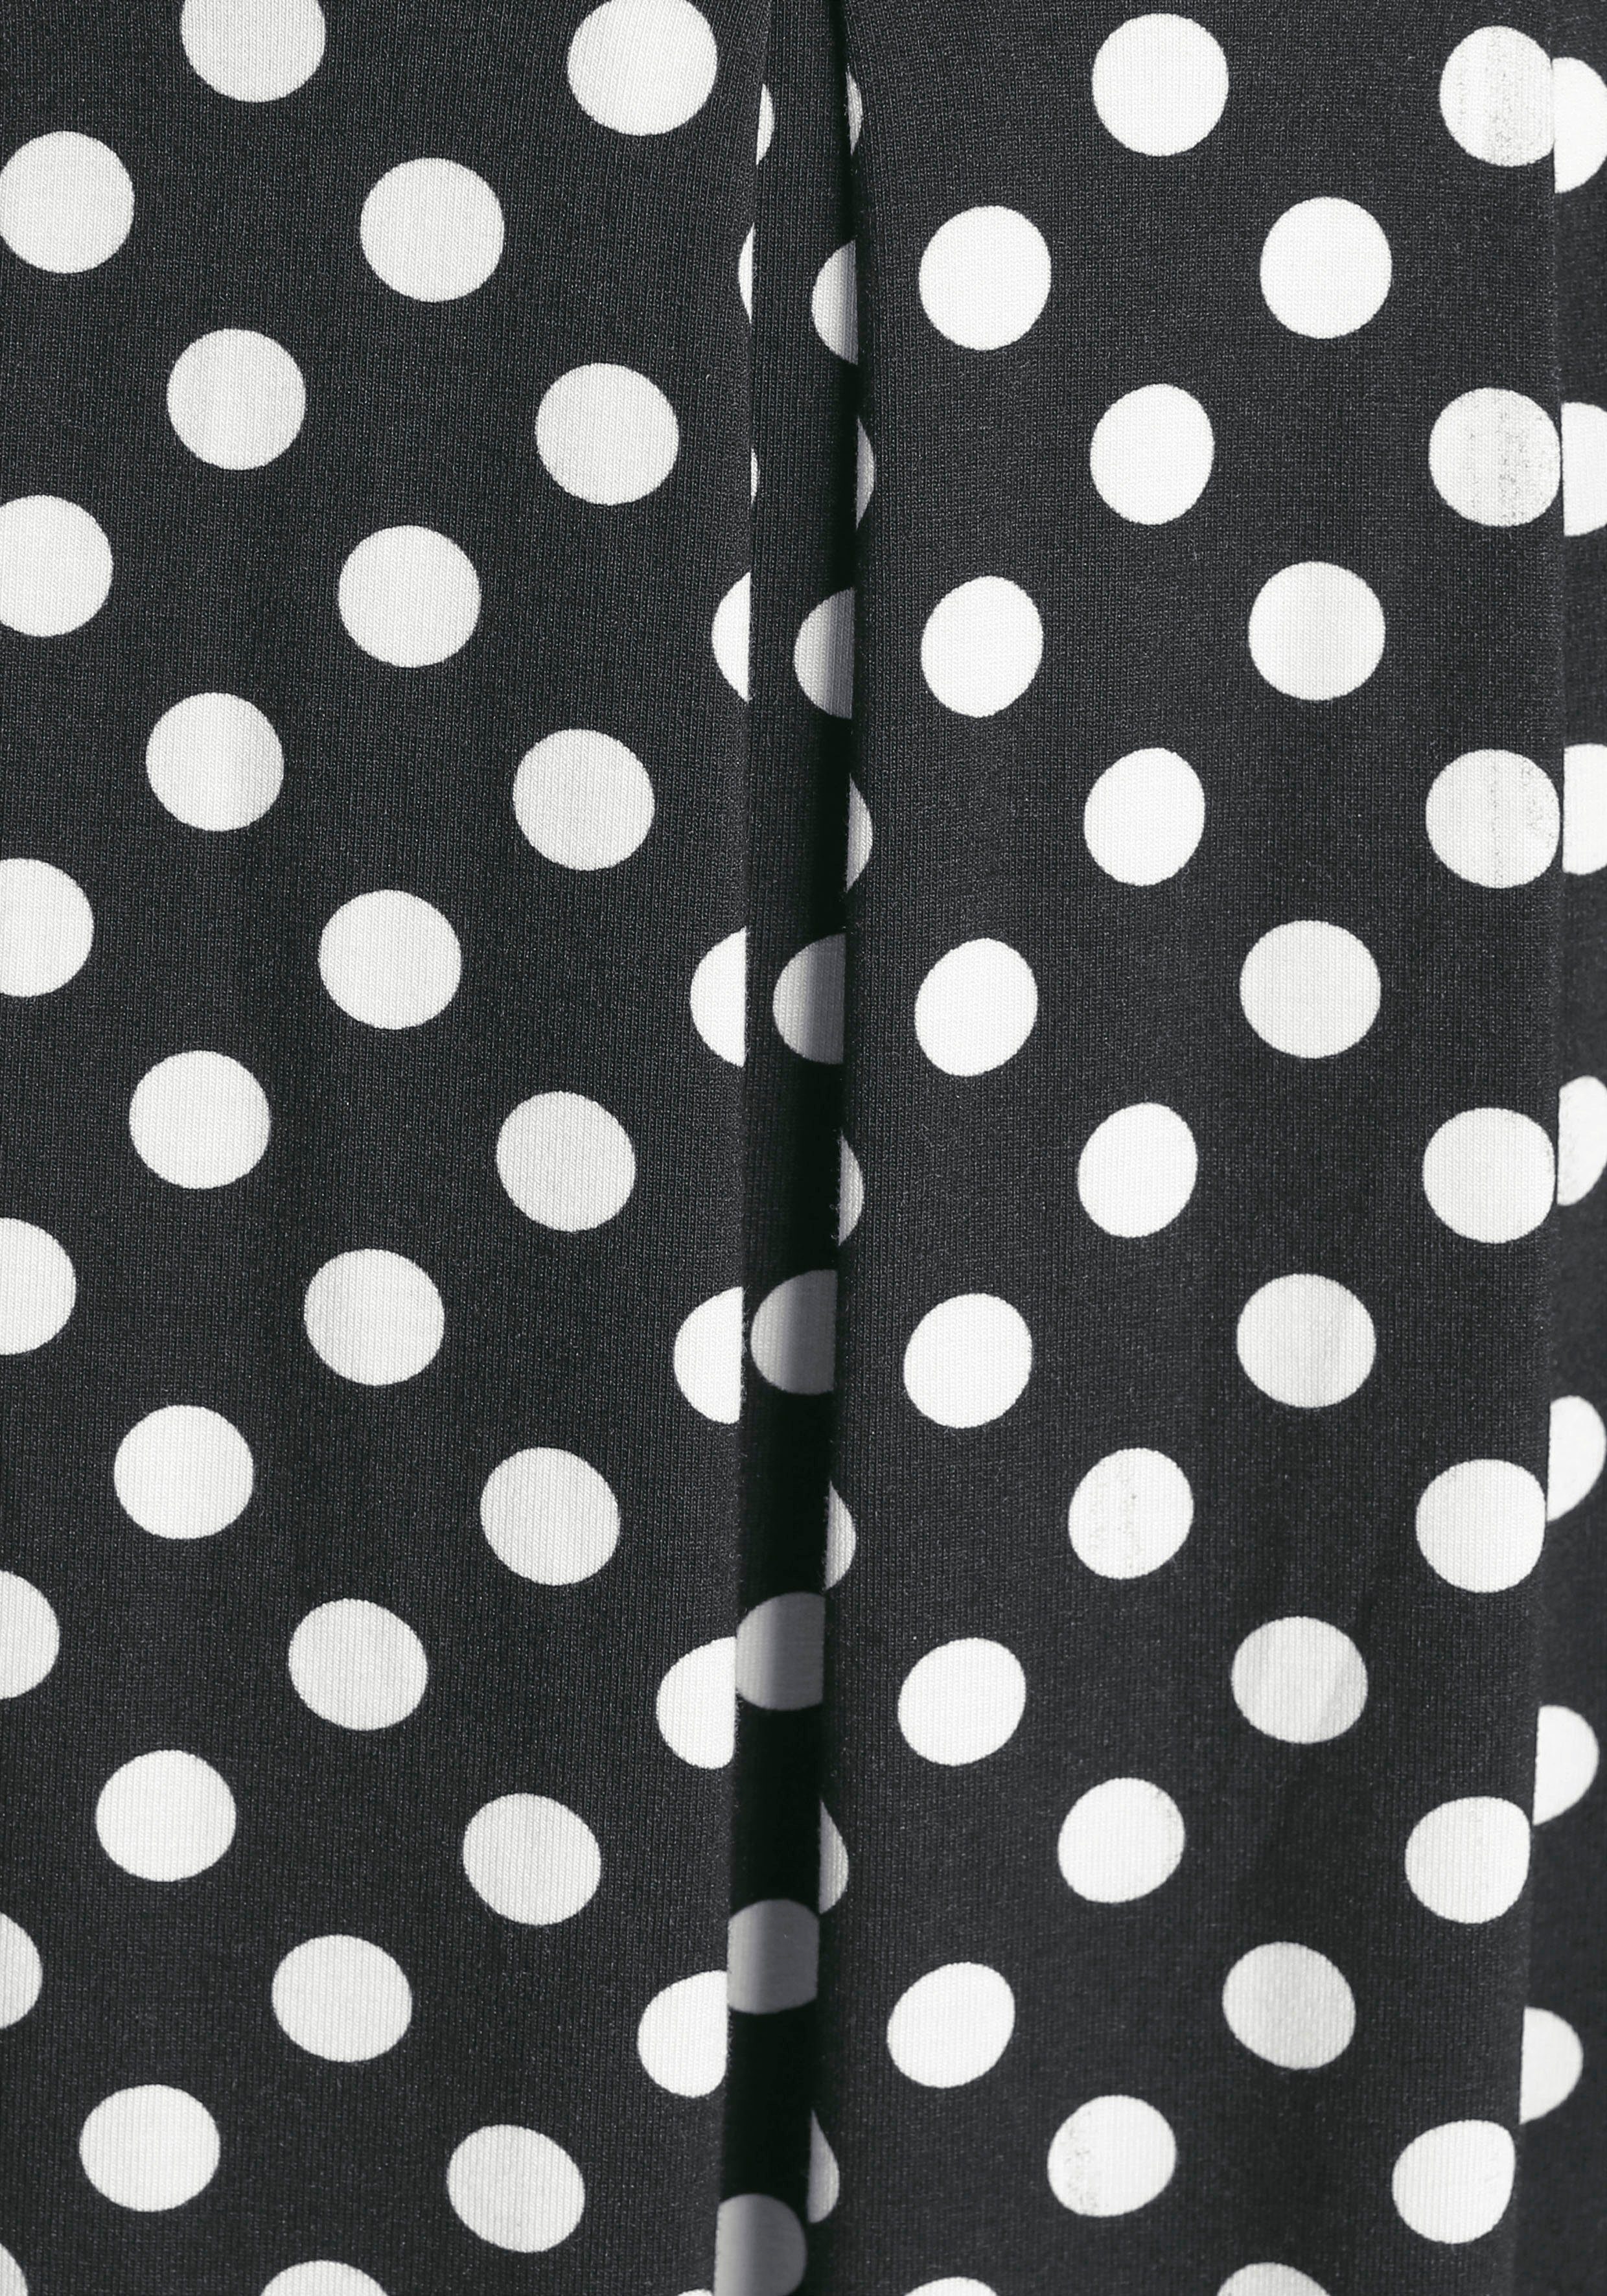 Boysen's Tupfen-Print Jerseykleid süßem schwarz, mit weiß